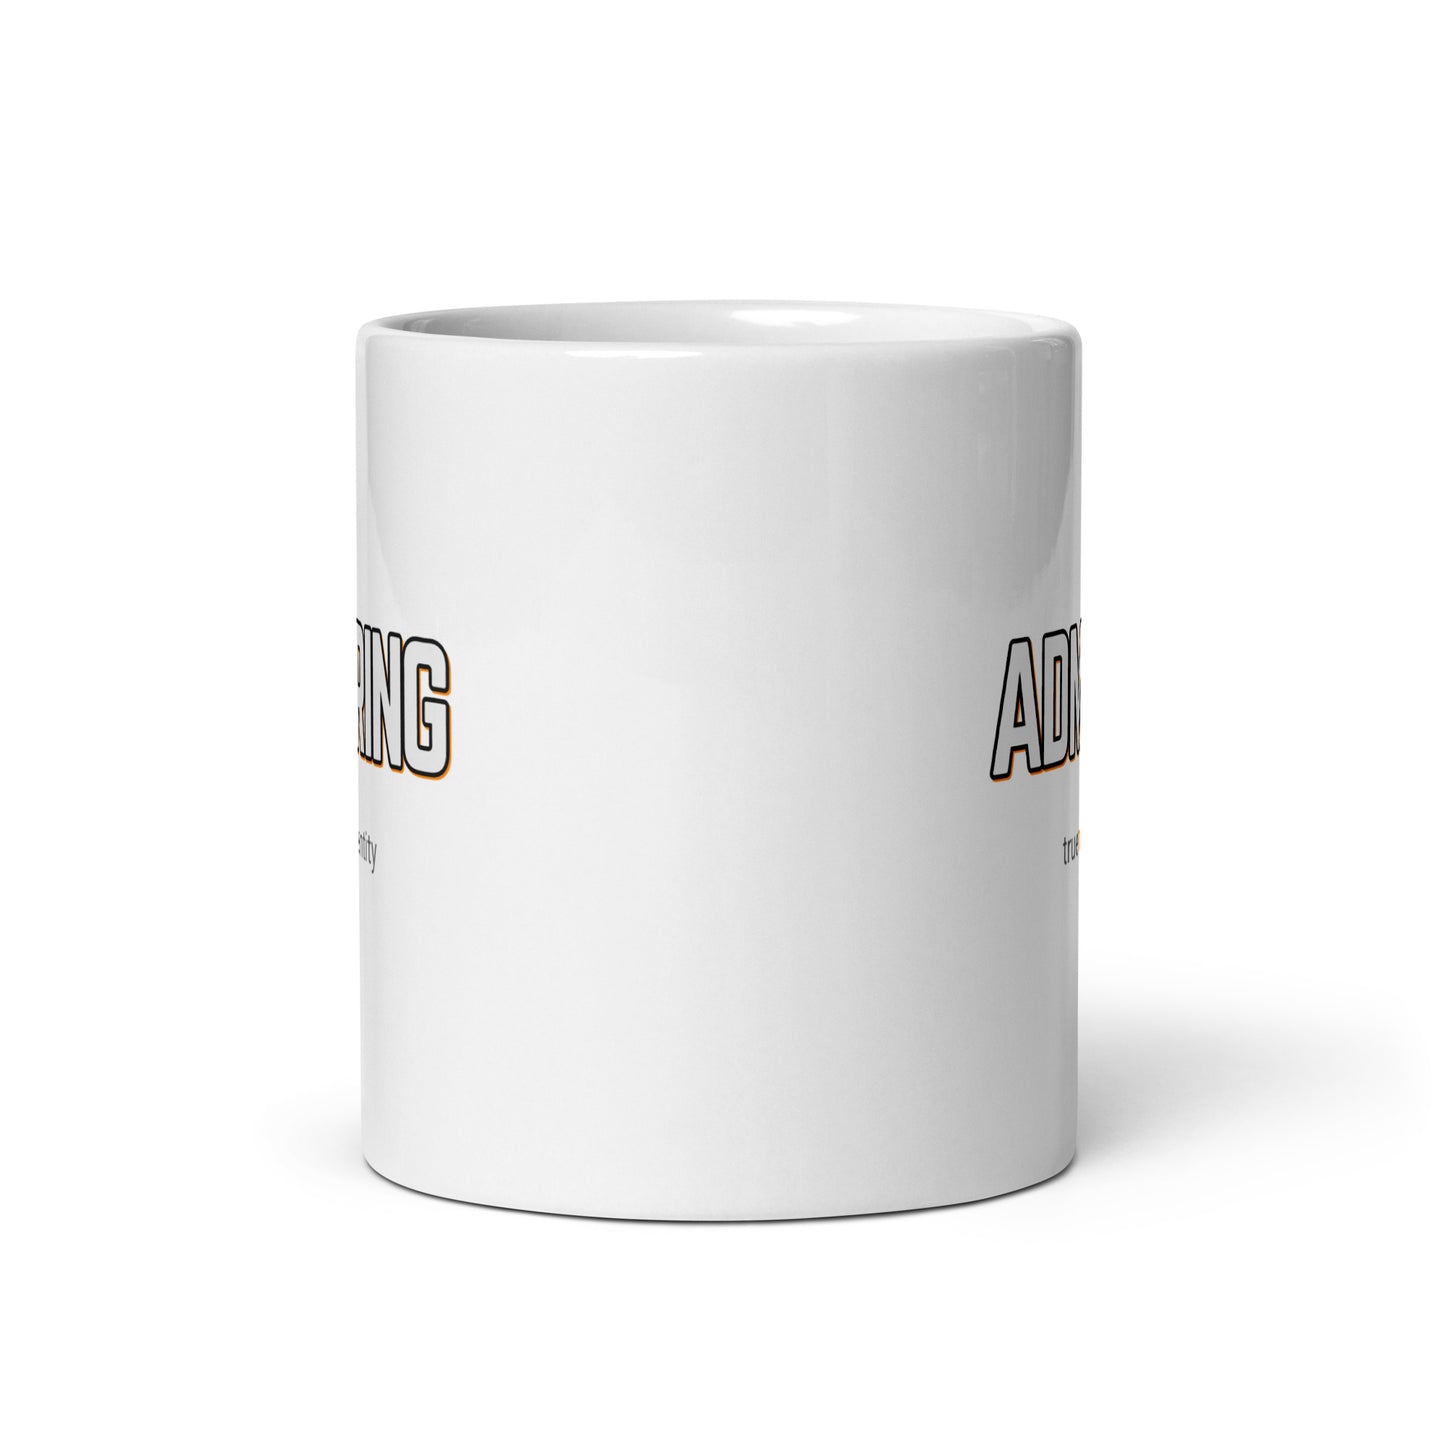 ADMIRING White Coffee Mug Bold 11 oz or 15 oz